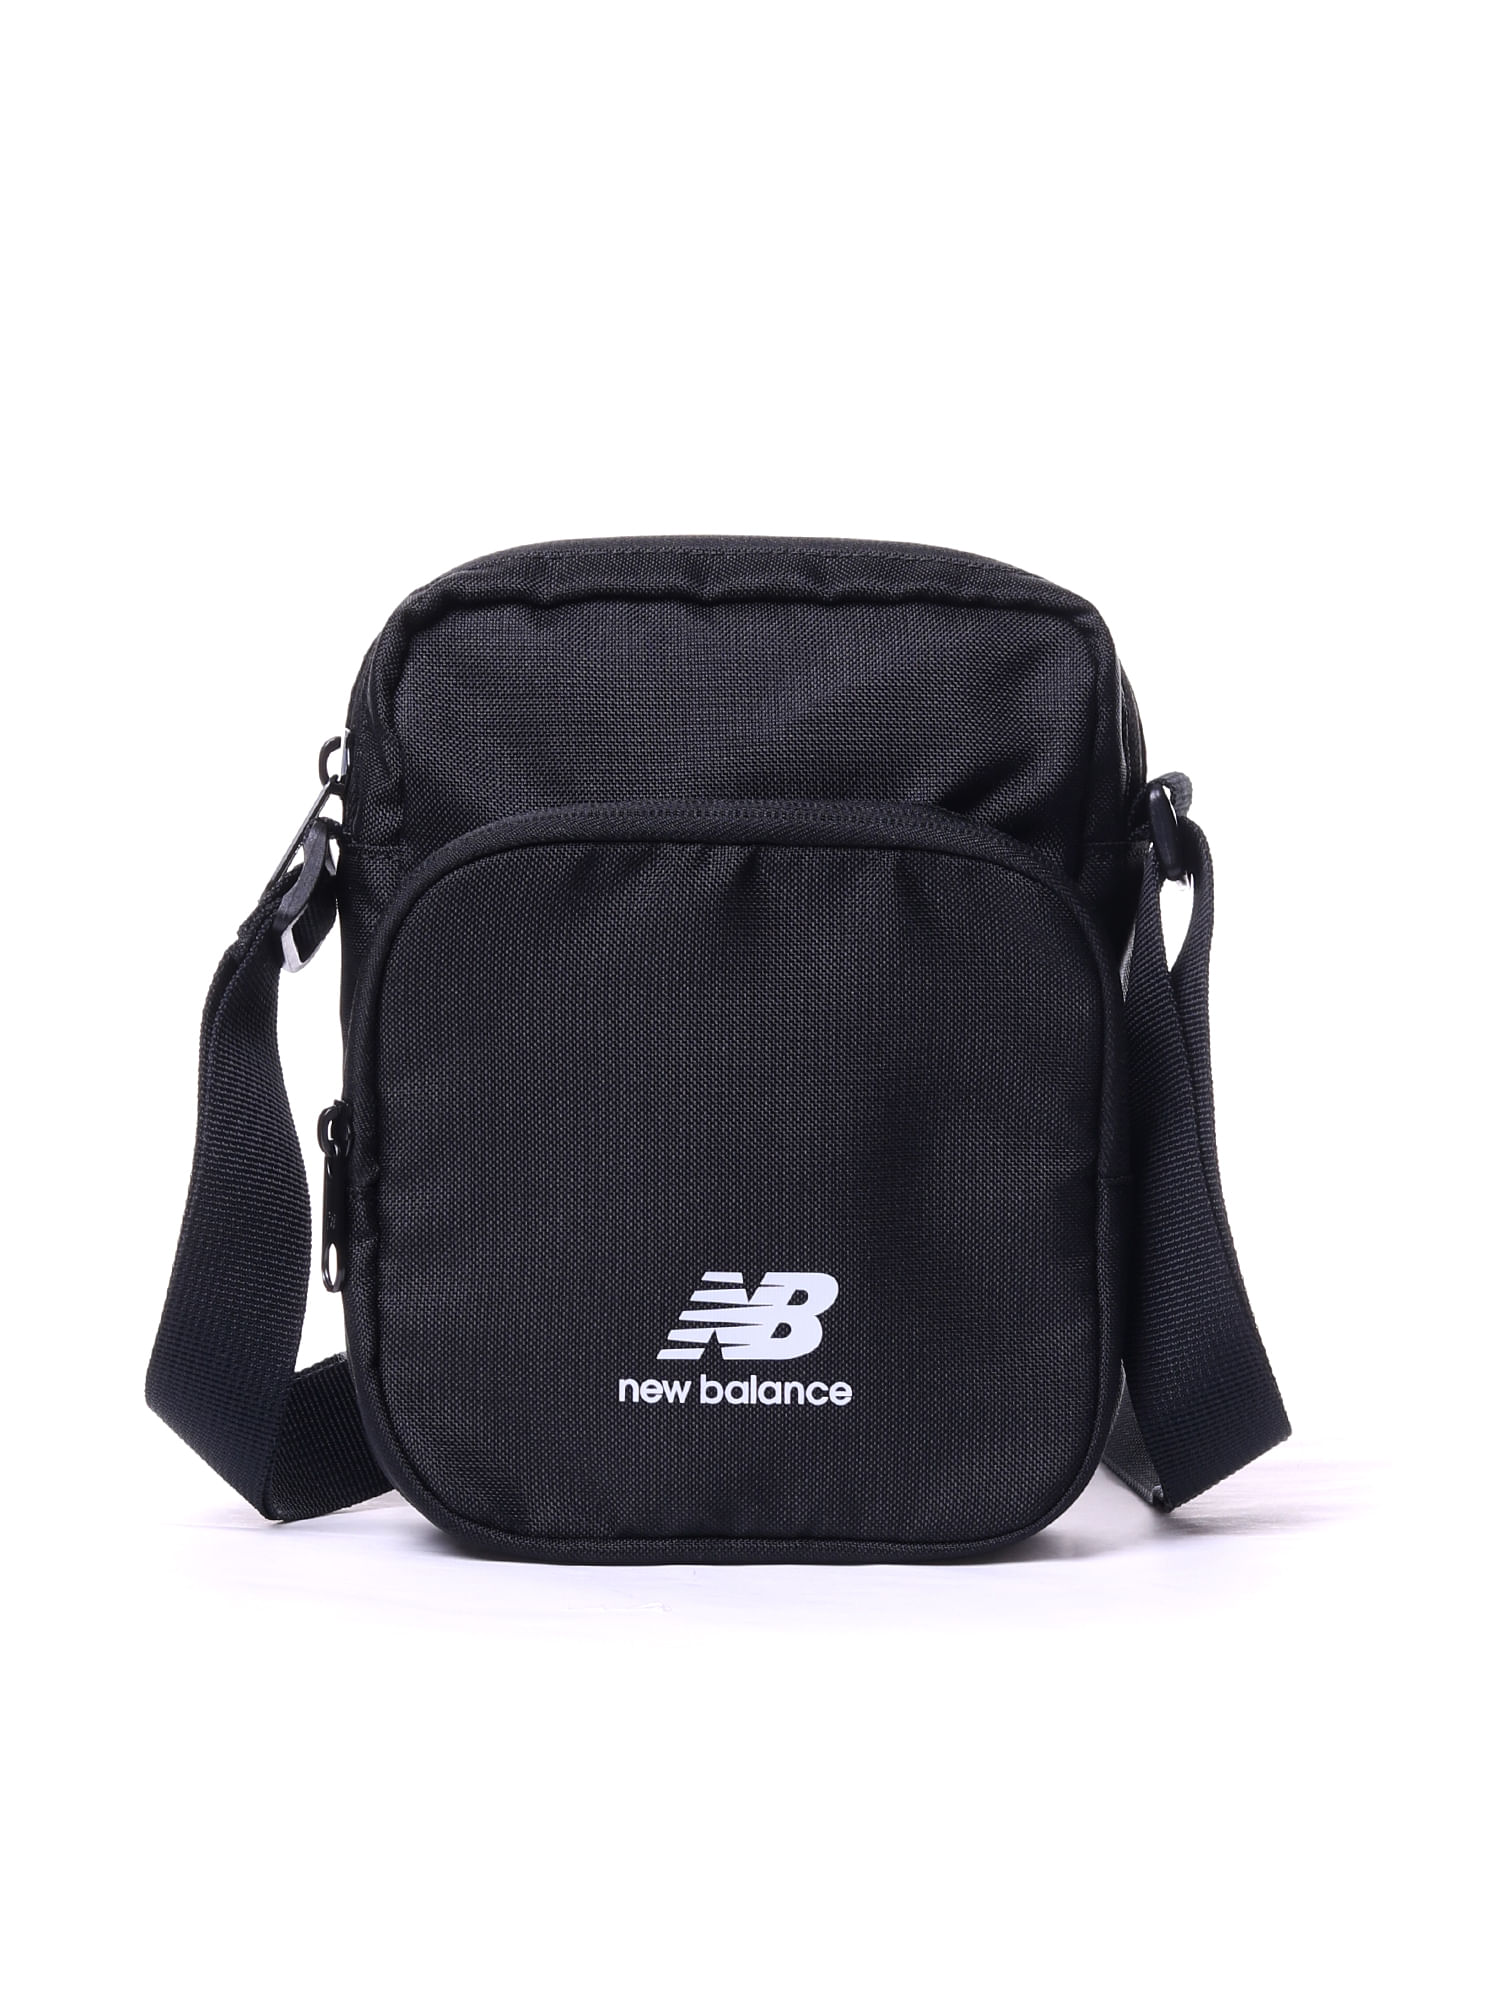 Shoulder-bag-new-balance-sling-Preto